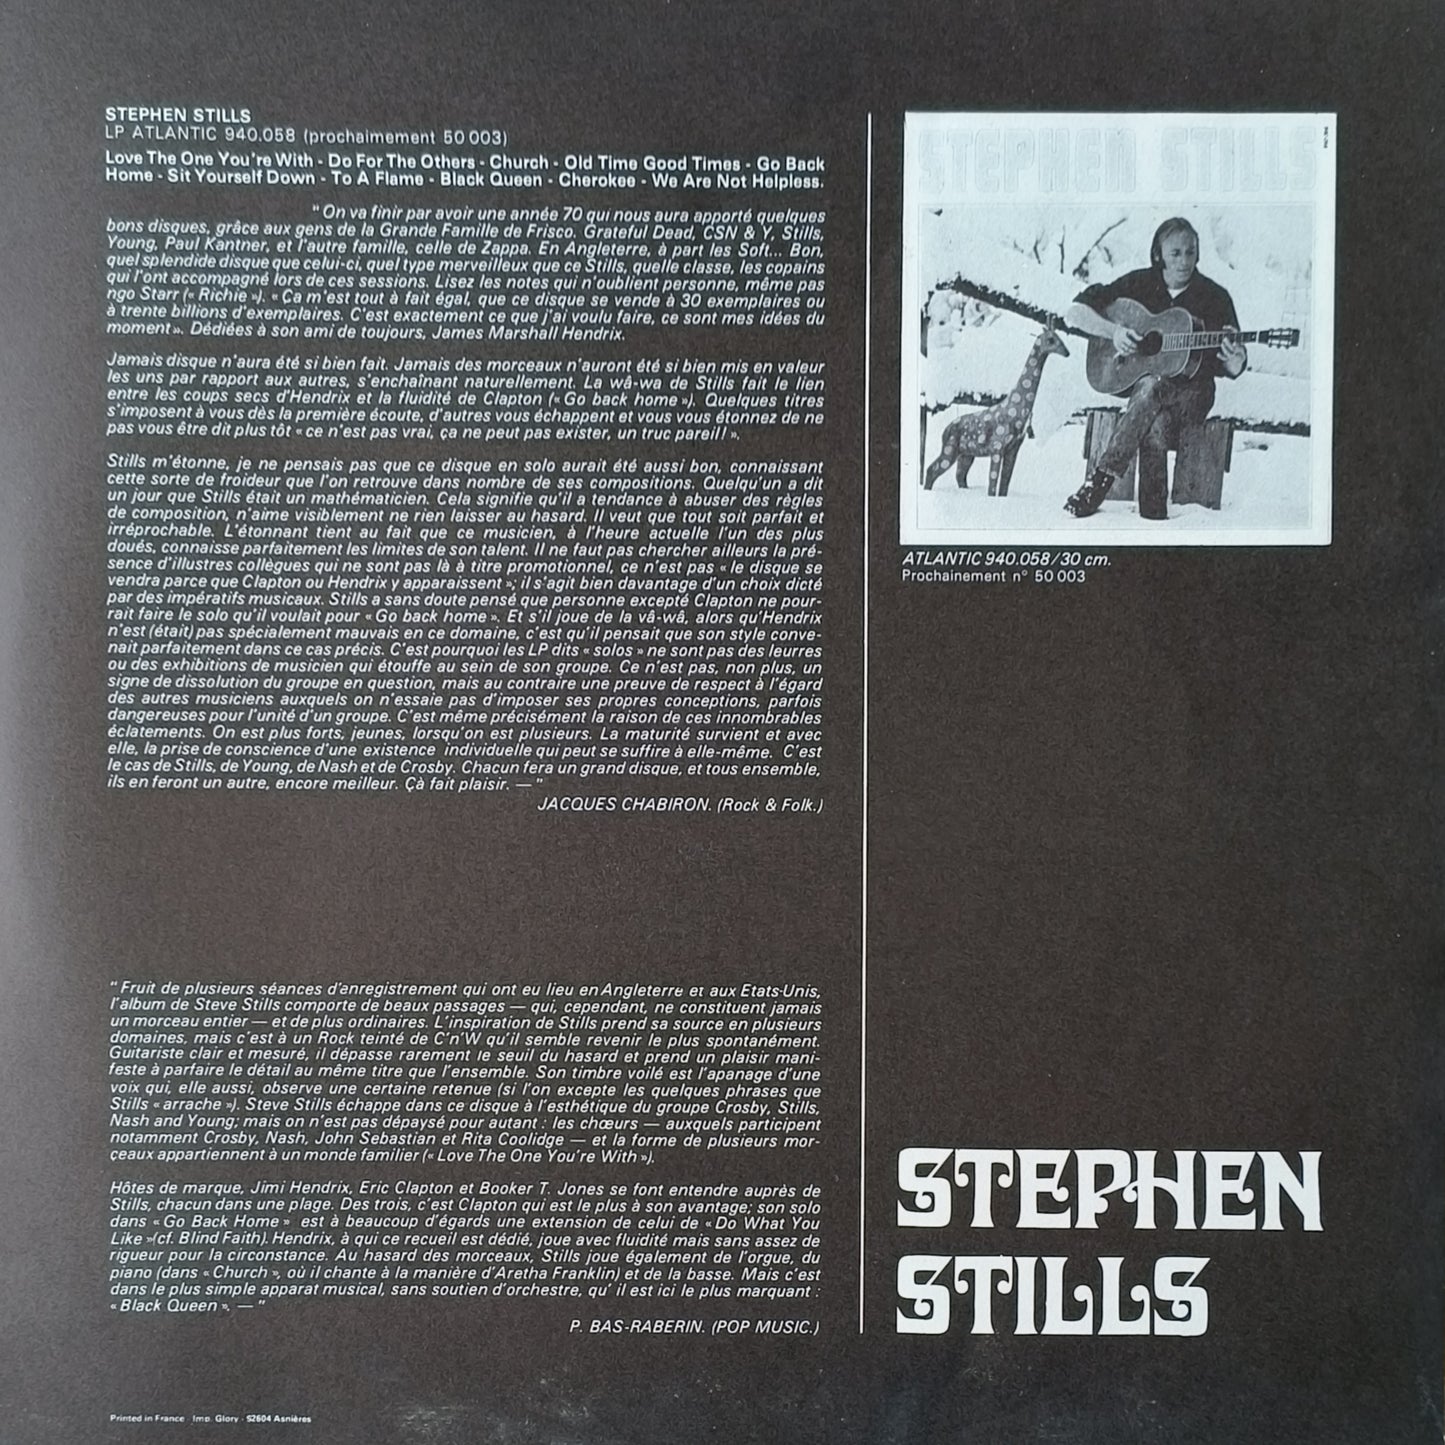 STEPHEN STILLS - Stephen Stills 2